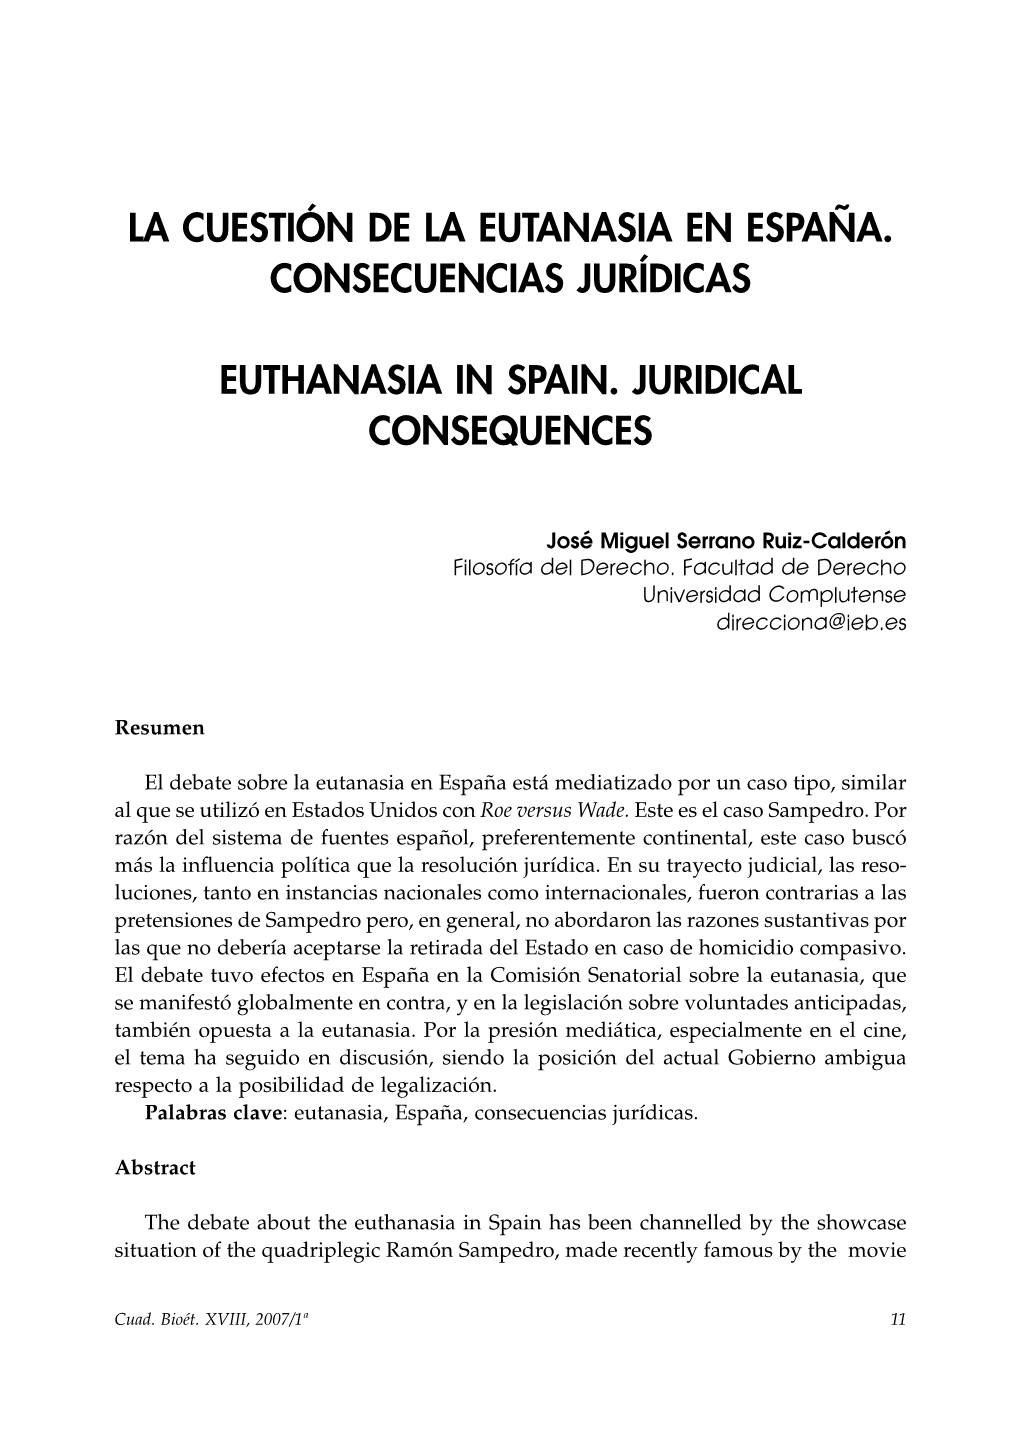 La Cuestión De La Eutanasia En España. Consecuencias Jurídicas Euthanasia in Spain. Juridical Consequences